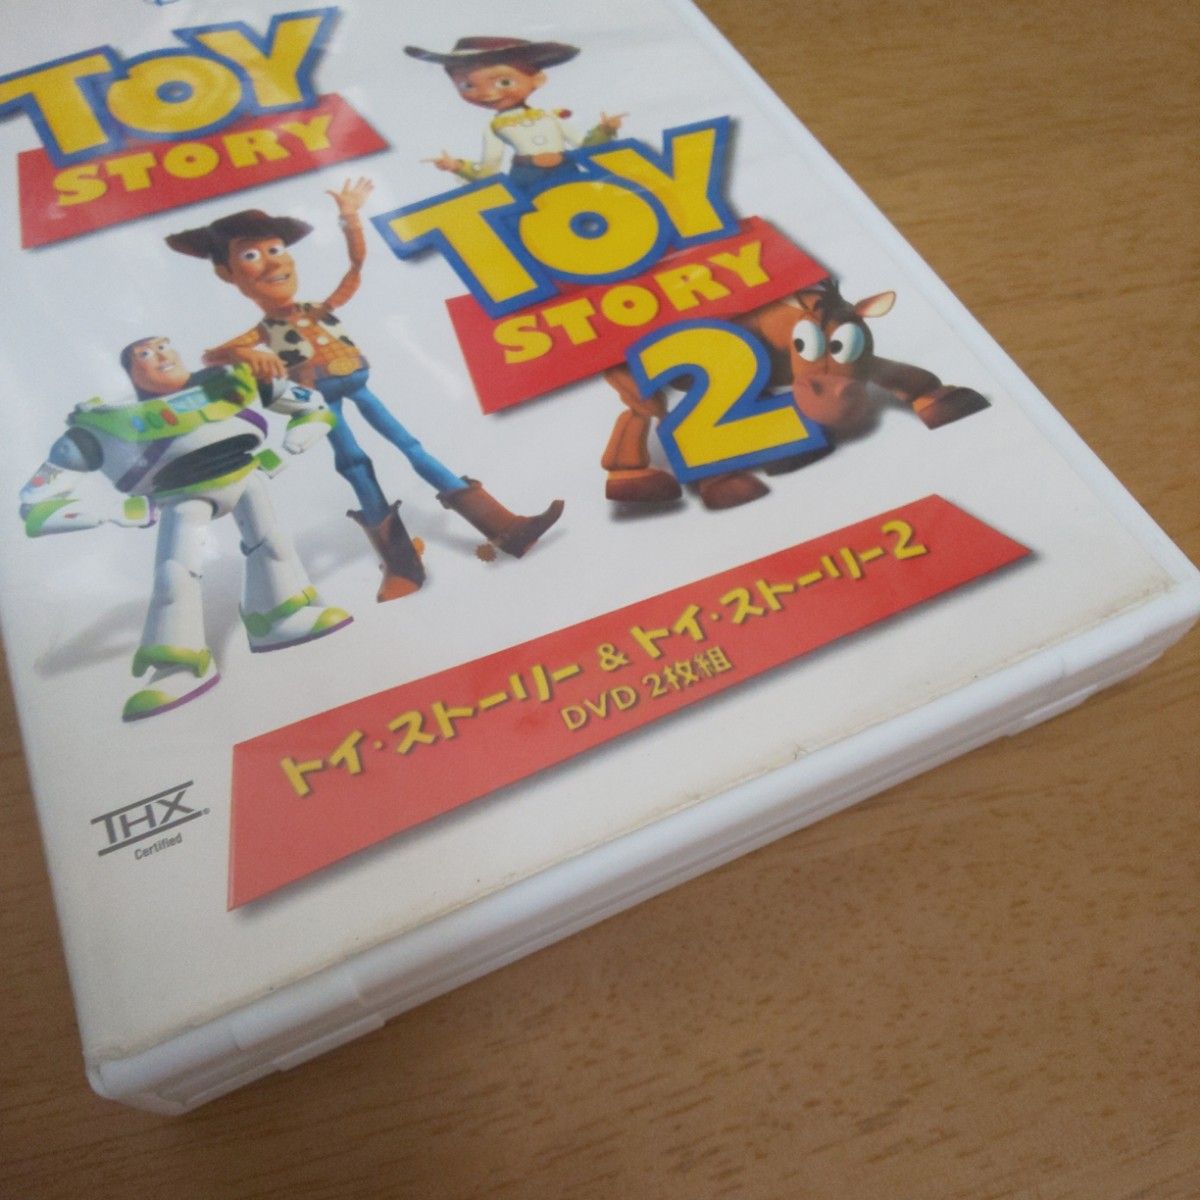 トイストーリー&トイストーリー2 DVD